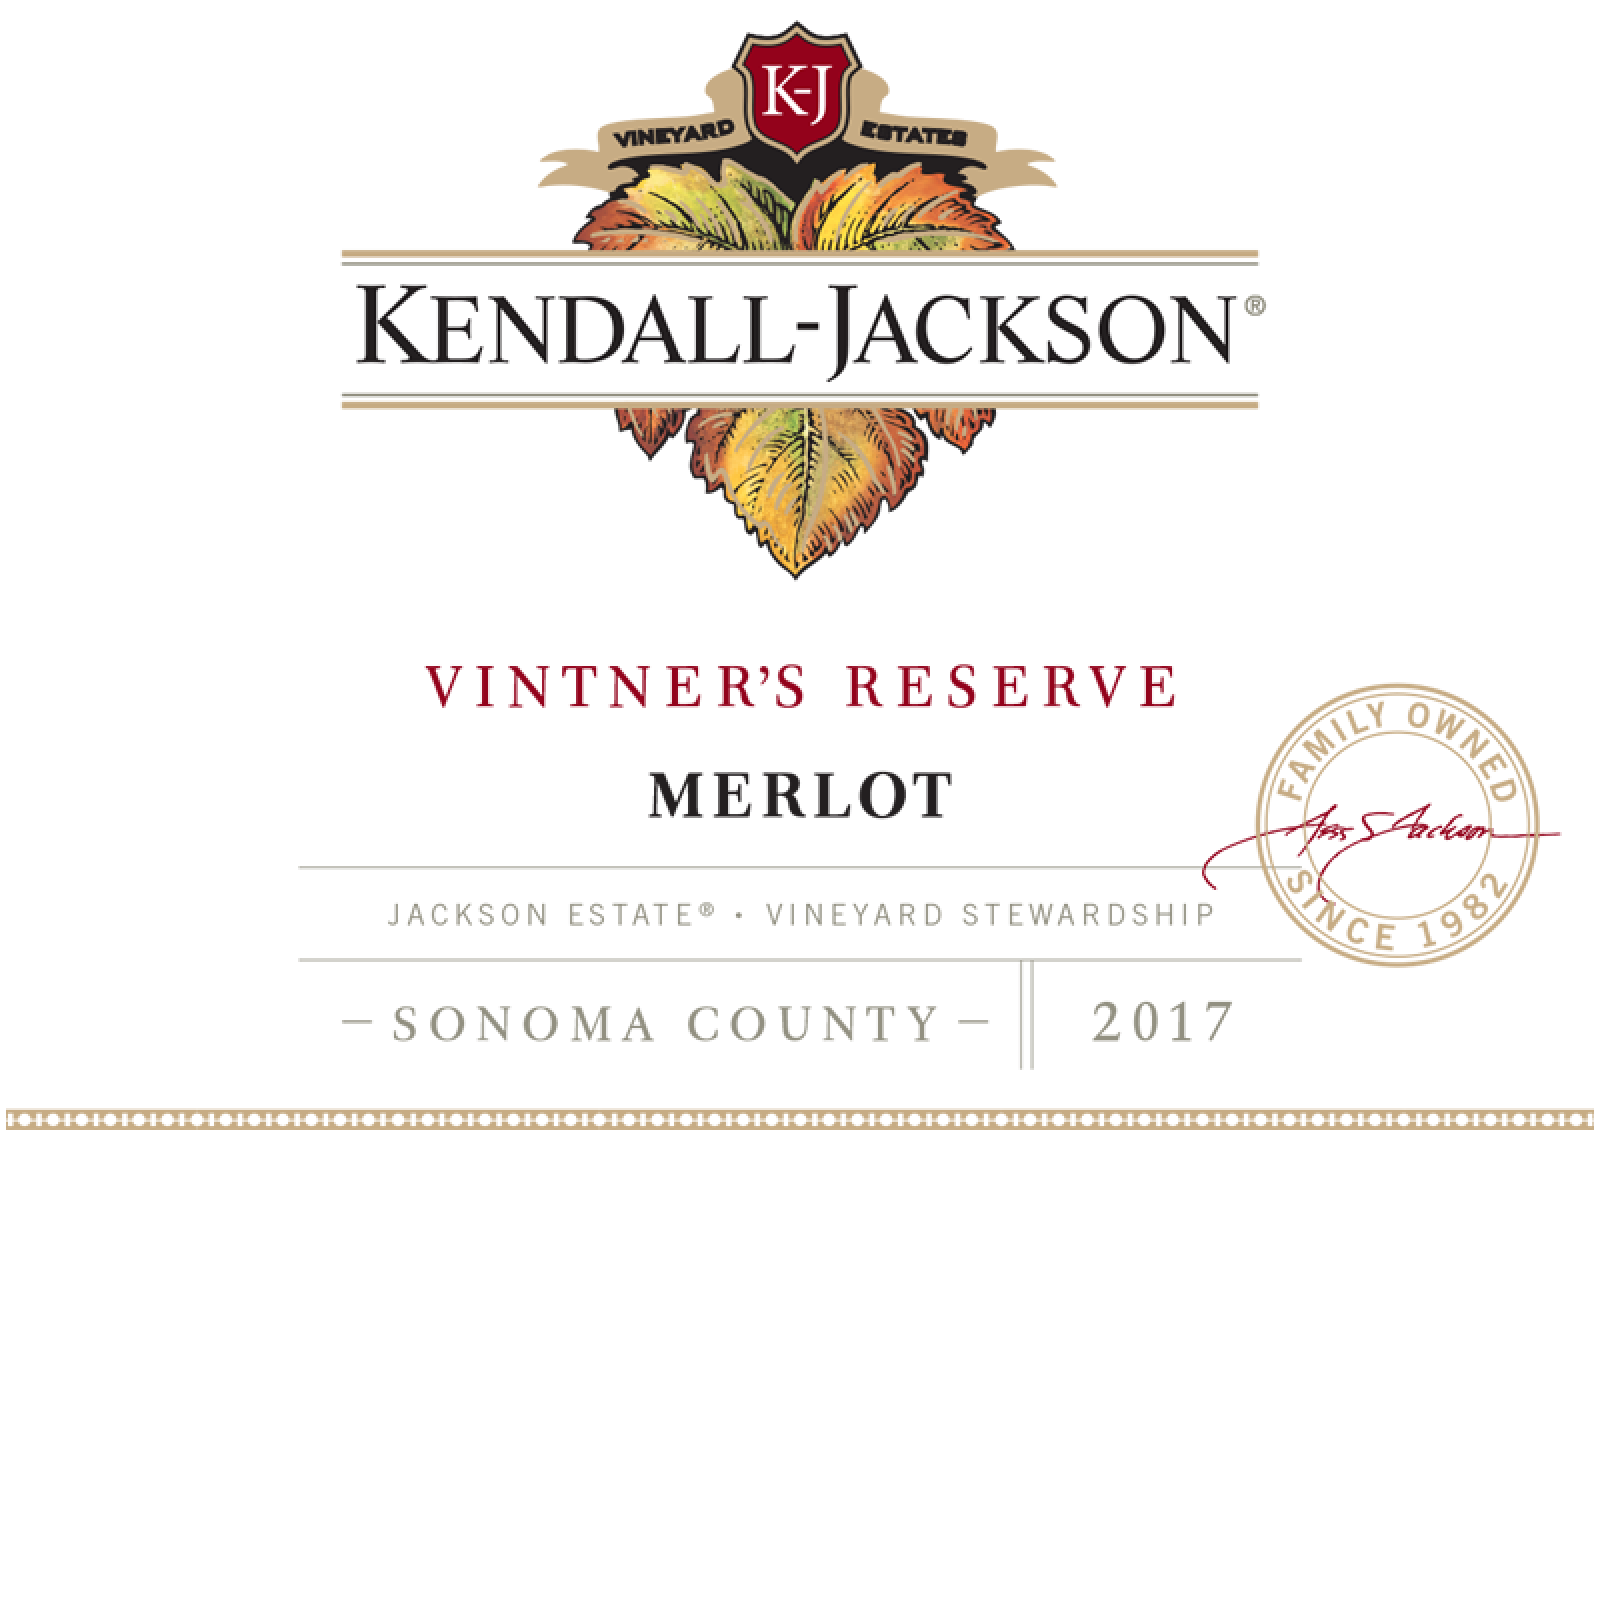 Kendall-Jackson Vintner's Reserve Merlot 2017